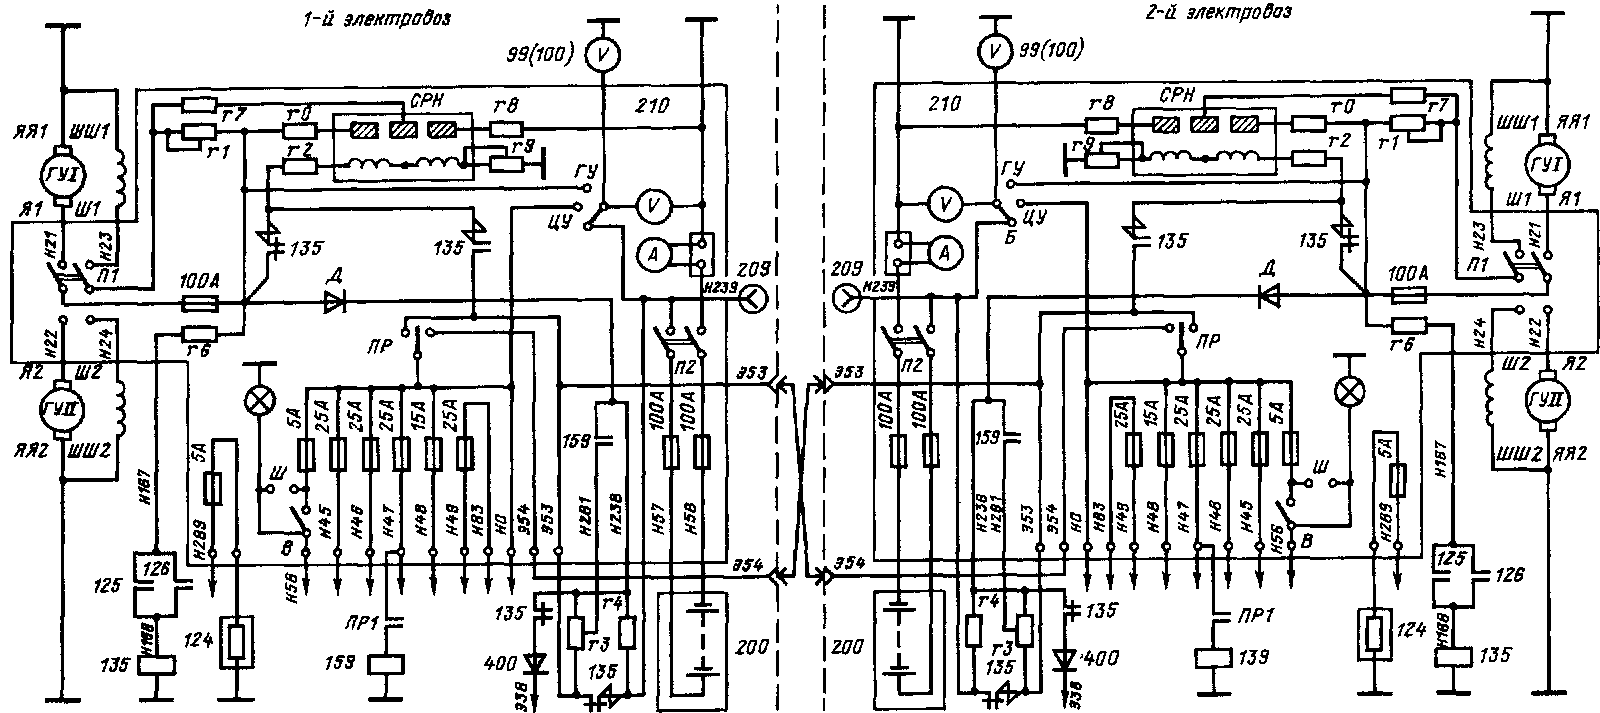 Схема резервирования источников питания цепей управления электровозов ВЛ60" при работе их по системе многих единиц